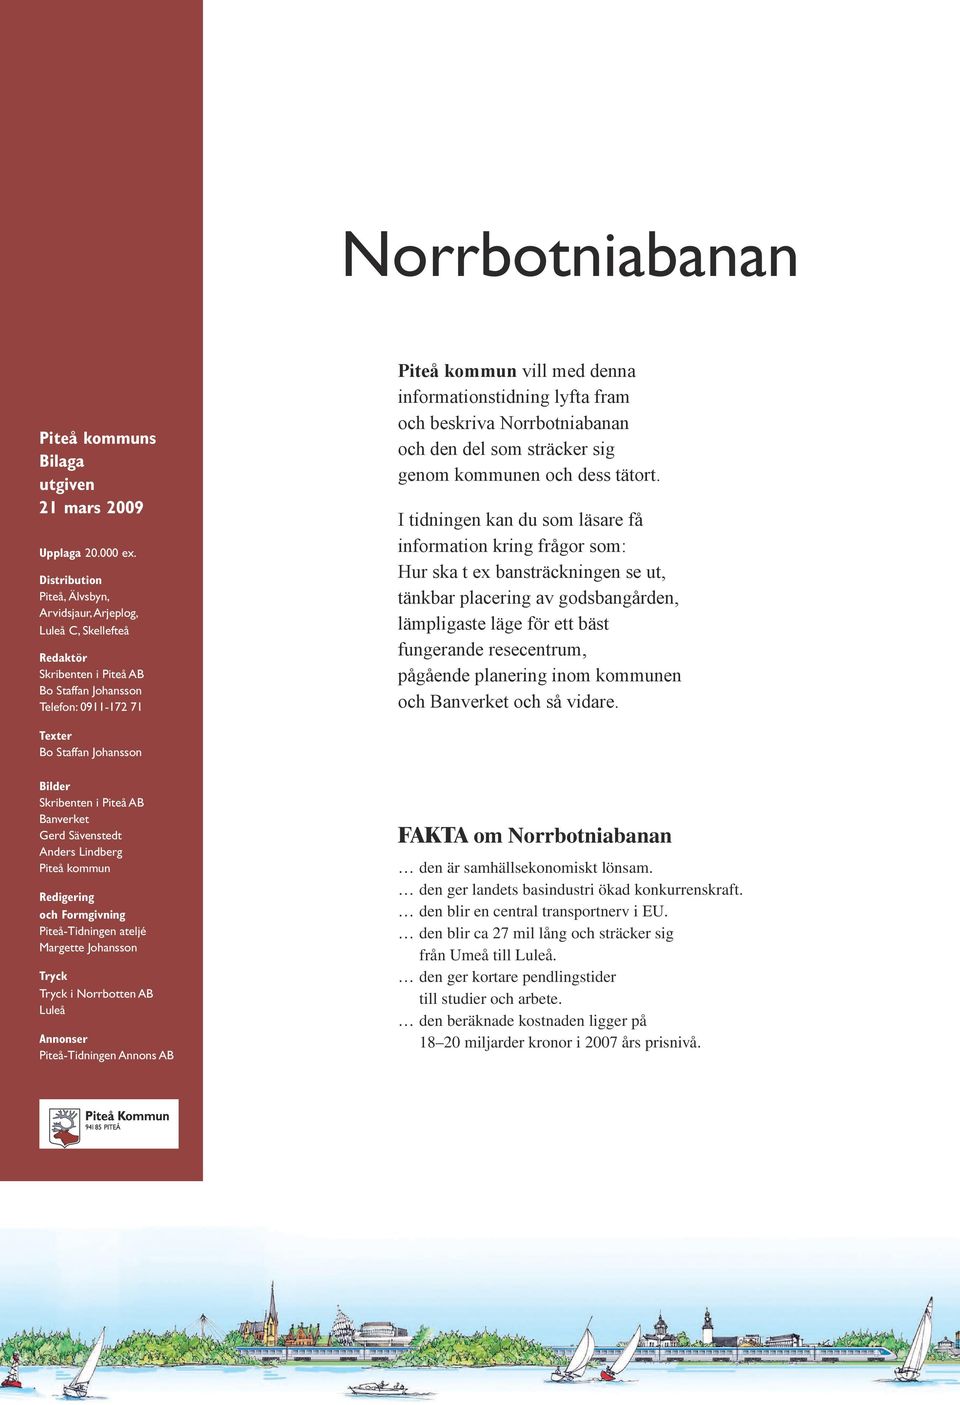 fram och beskriva Norrbotniabanan och den del som sträcker sig genom kommunen och dess tätort.